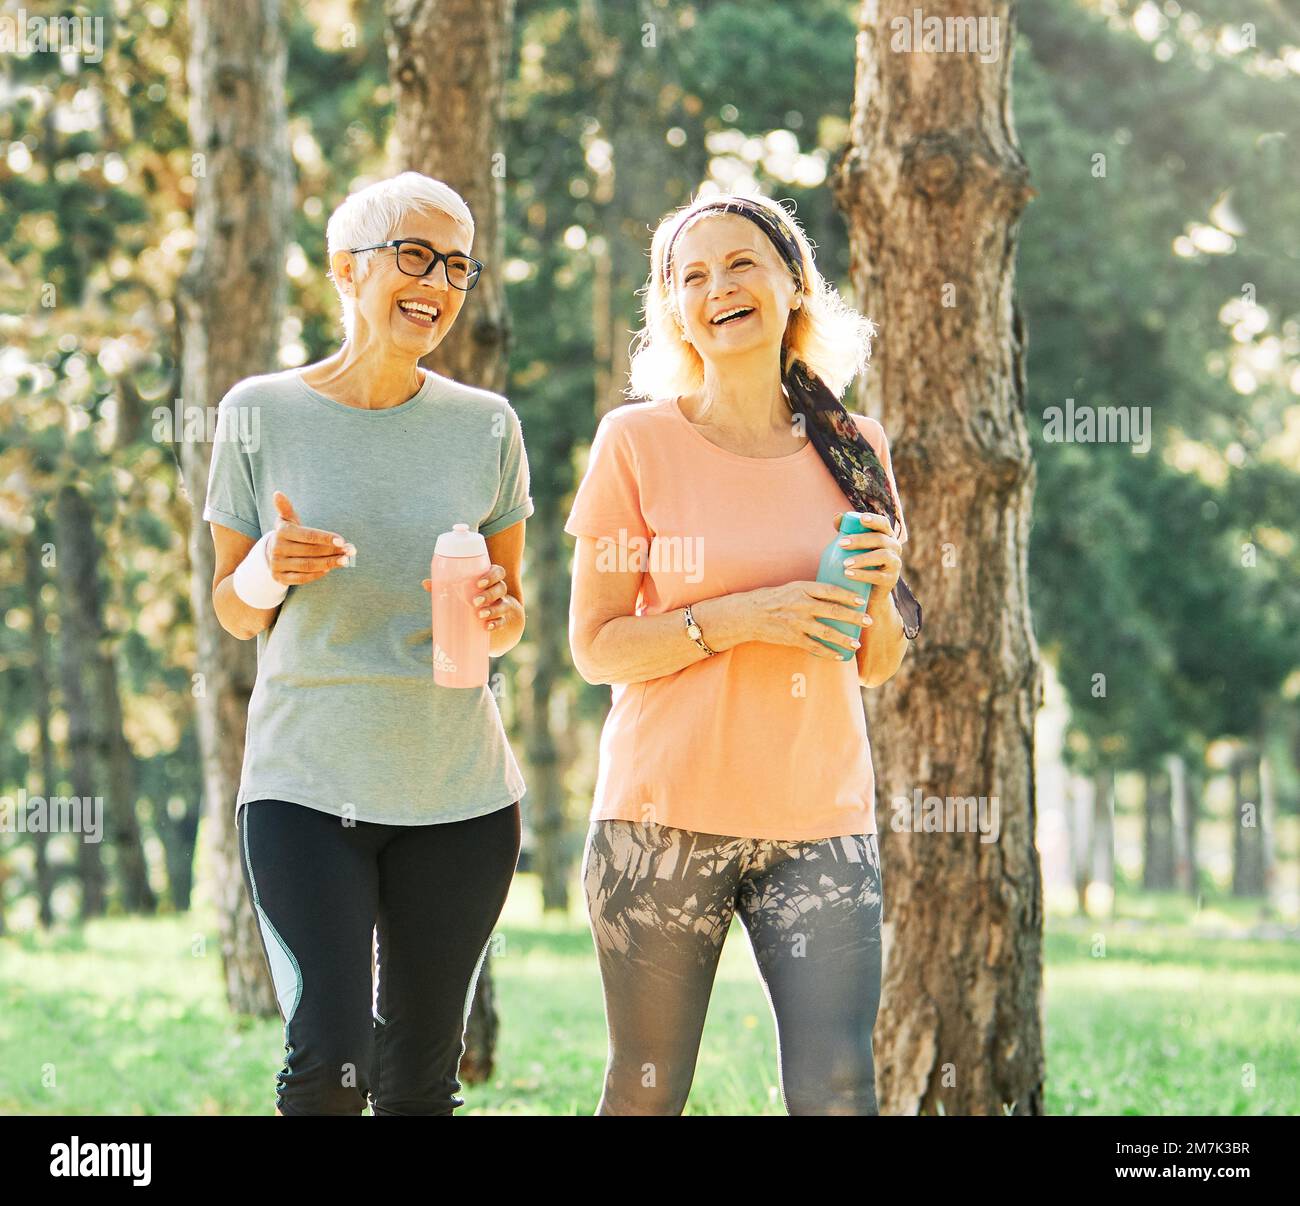 Outdoor Senior Fitness Frau Mann Lifestyle aktiv Sport Bewegung gesund fit Läufer Laufen Joggen Ältere graue Haare Stockfoto